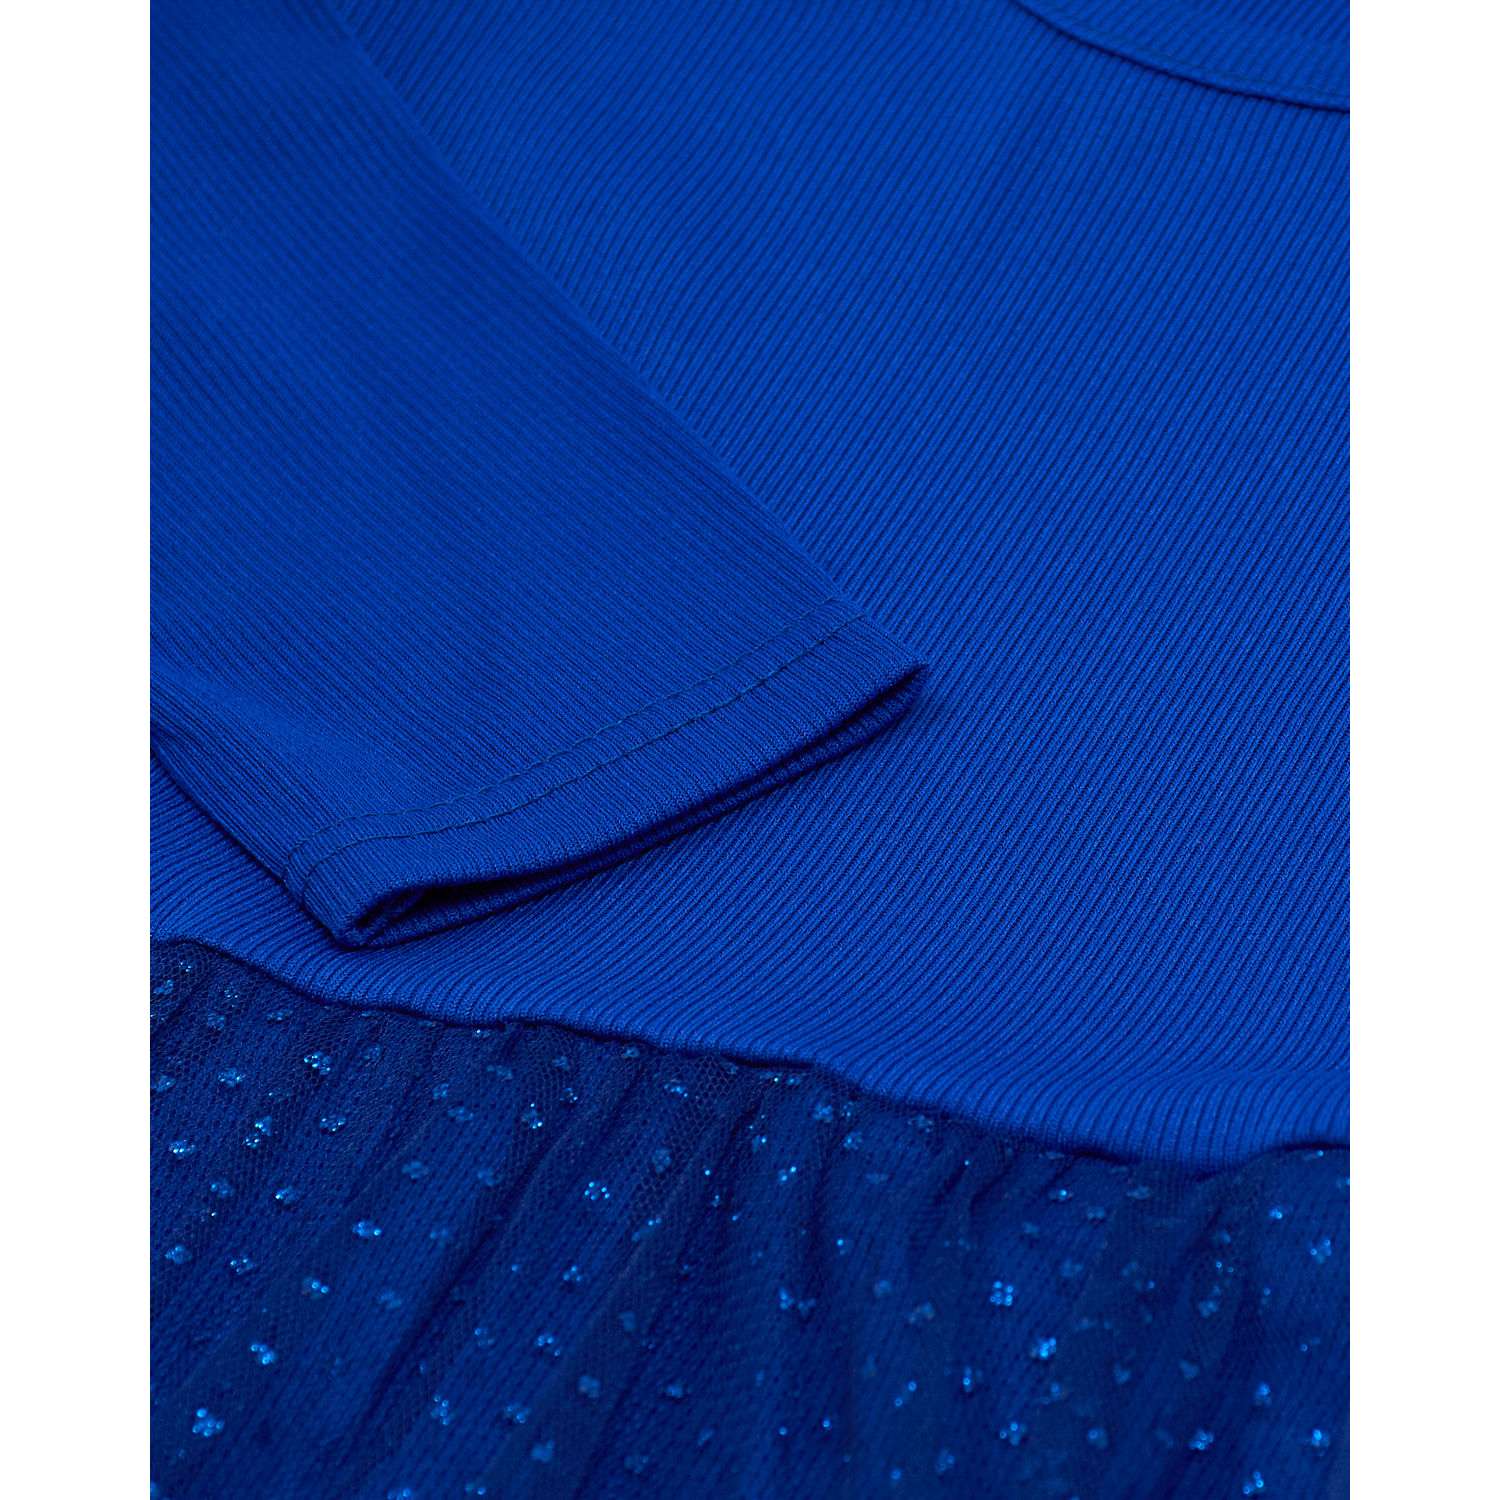 Платье Katlen БР-Пл-008/Синий - фото 3